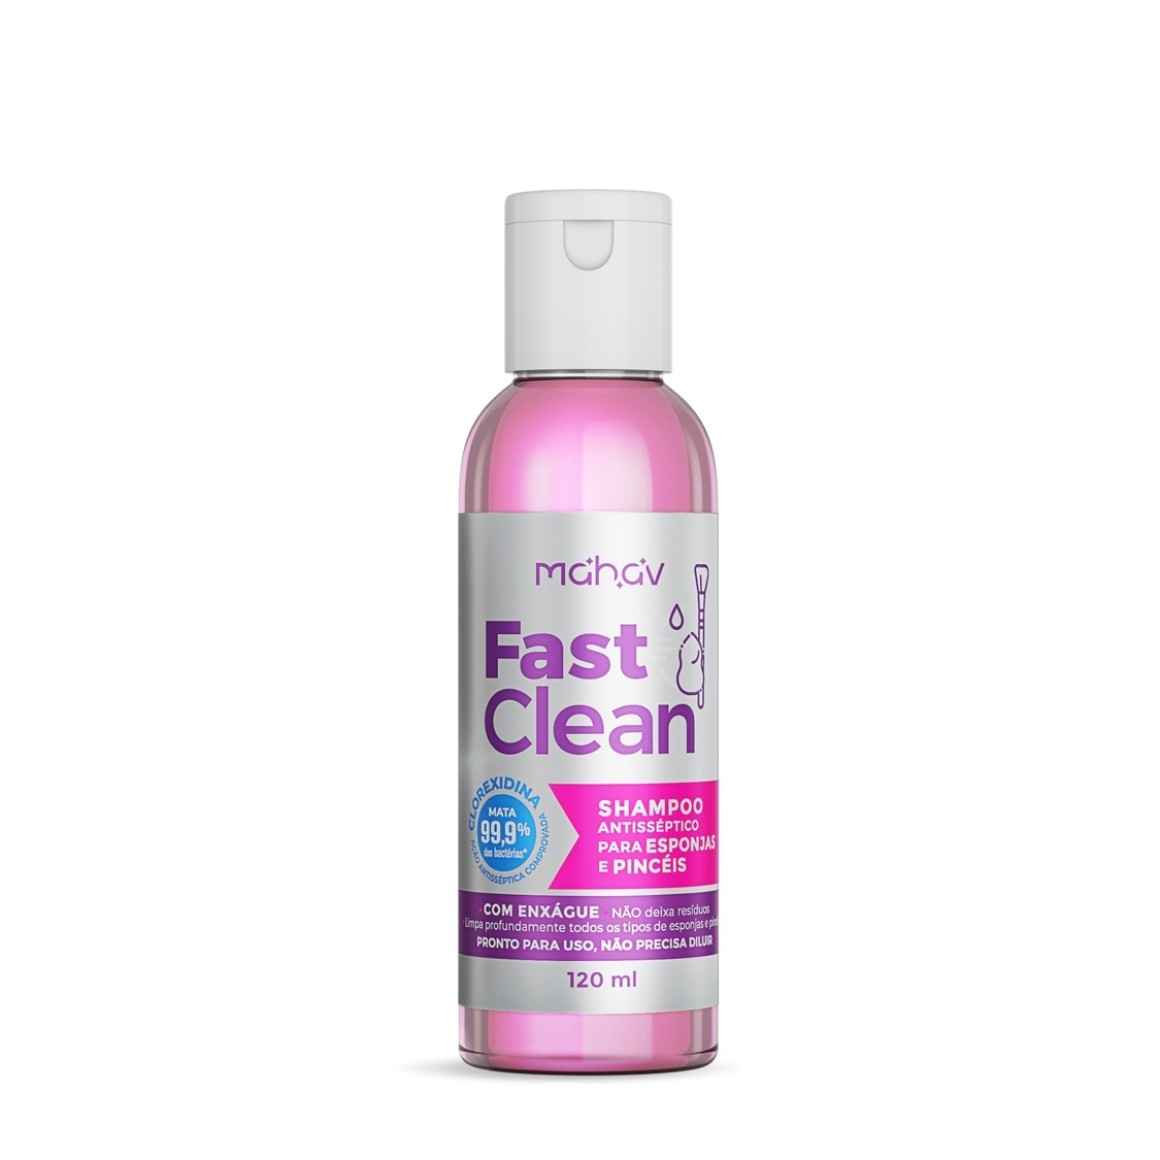 Fast Clean! Shampoo Antisséptico Para Esponjas e Pincéis - Mahav (SHE-MV)